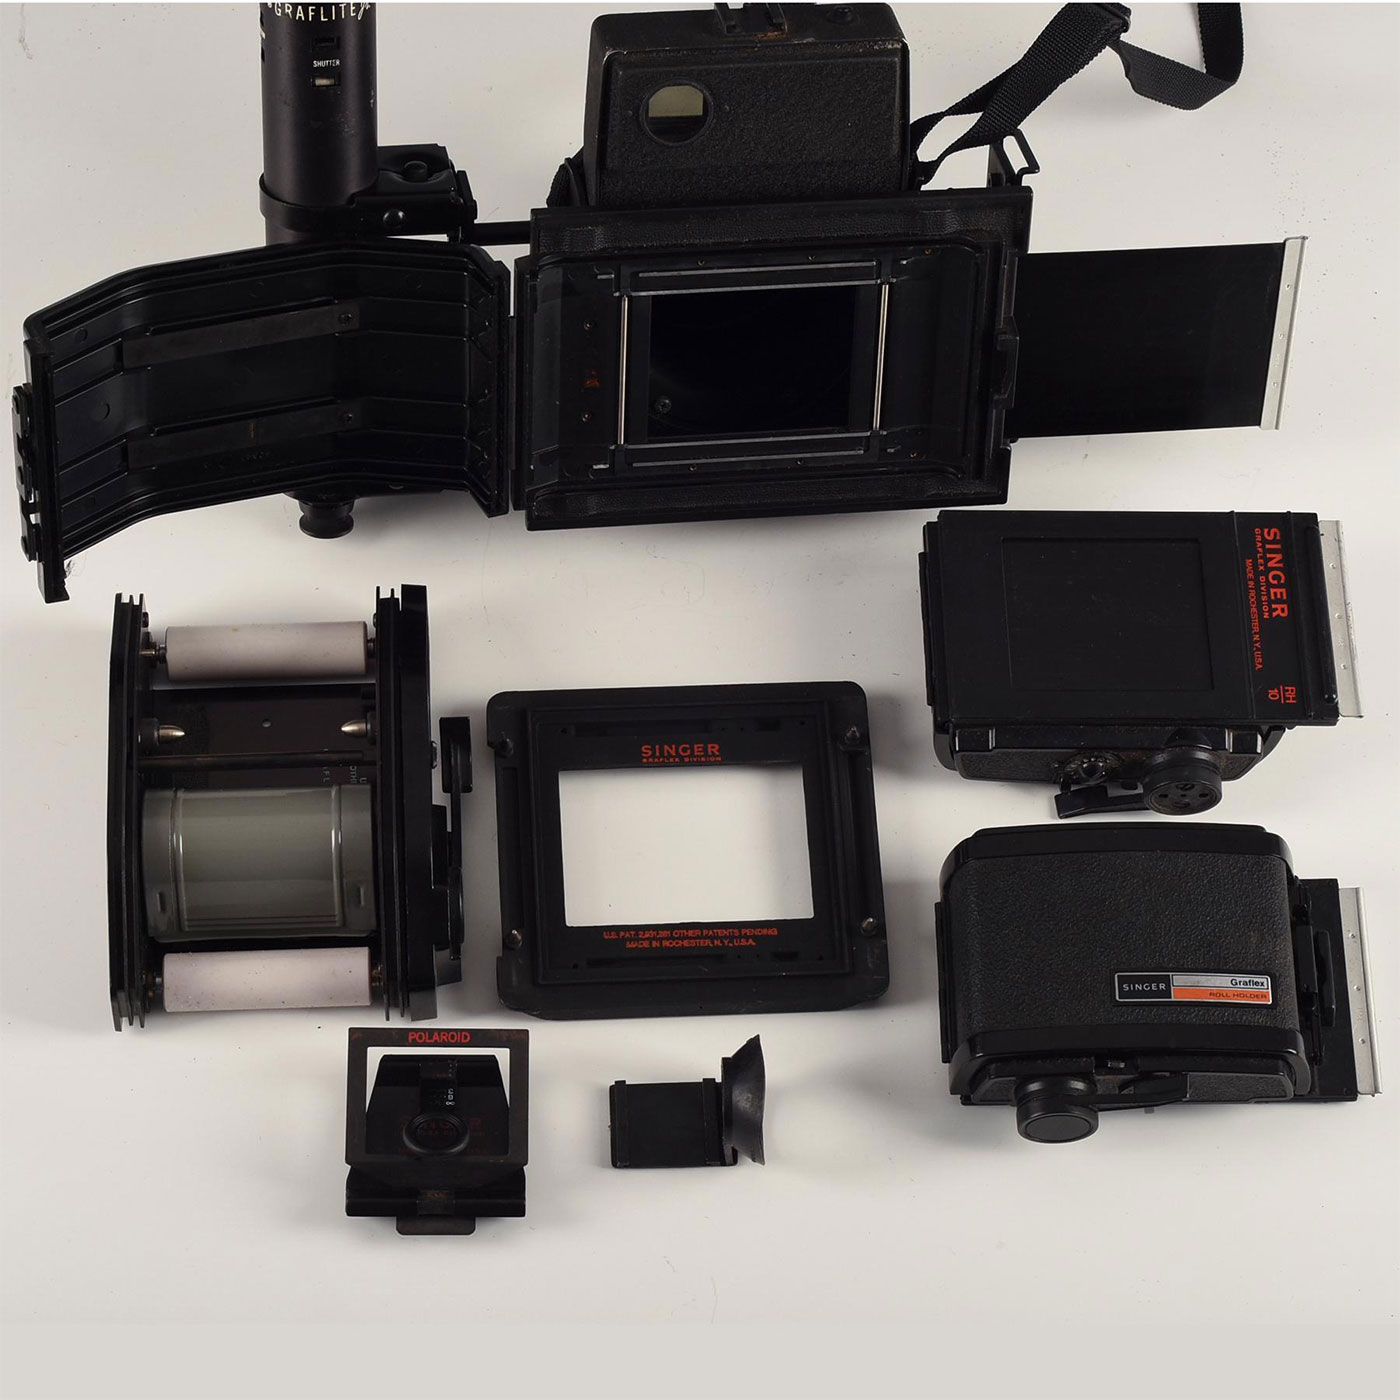 Graflex hard shell camera case Mint Condition